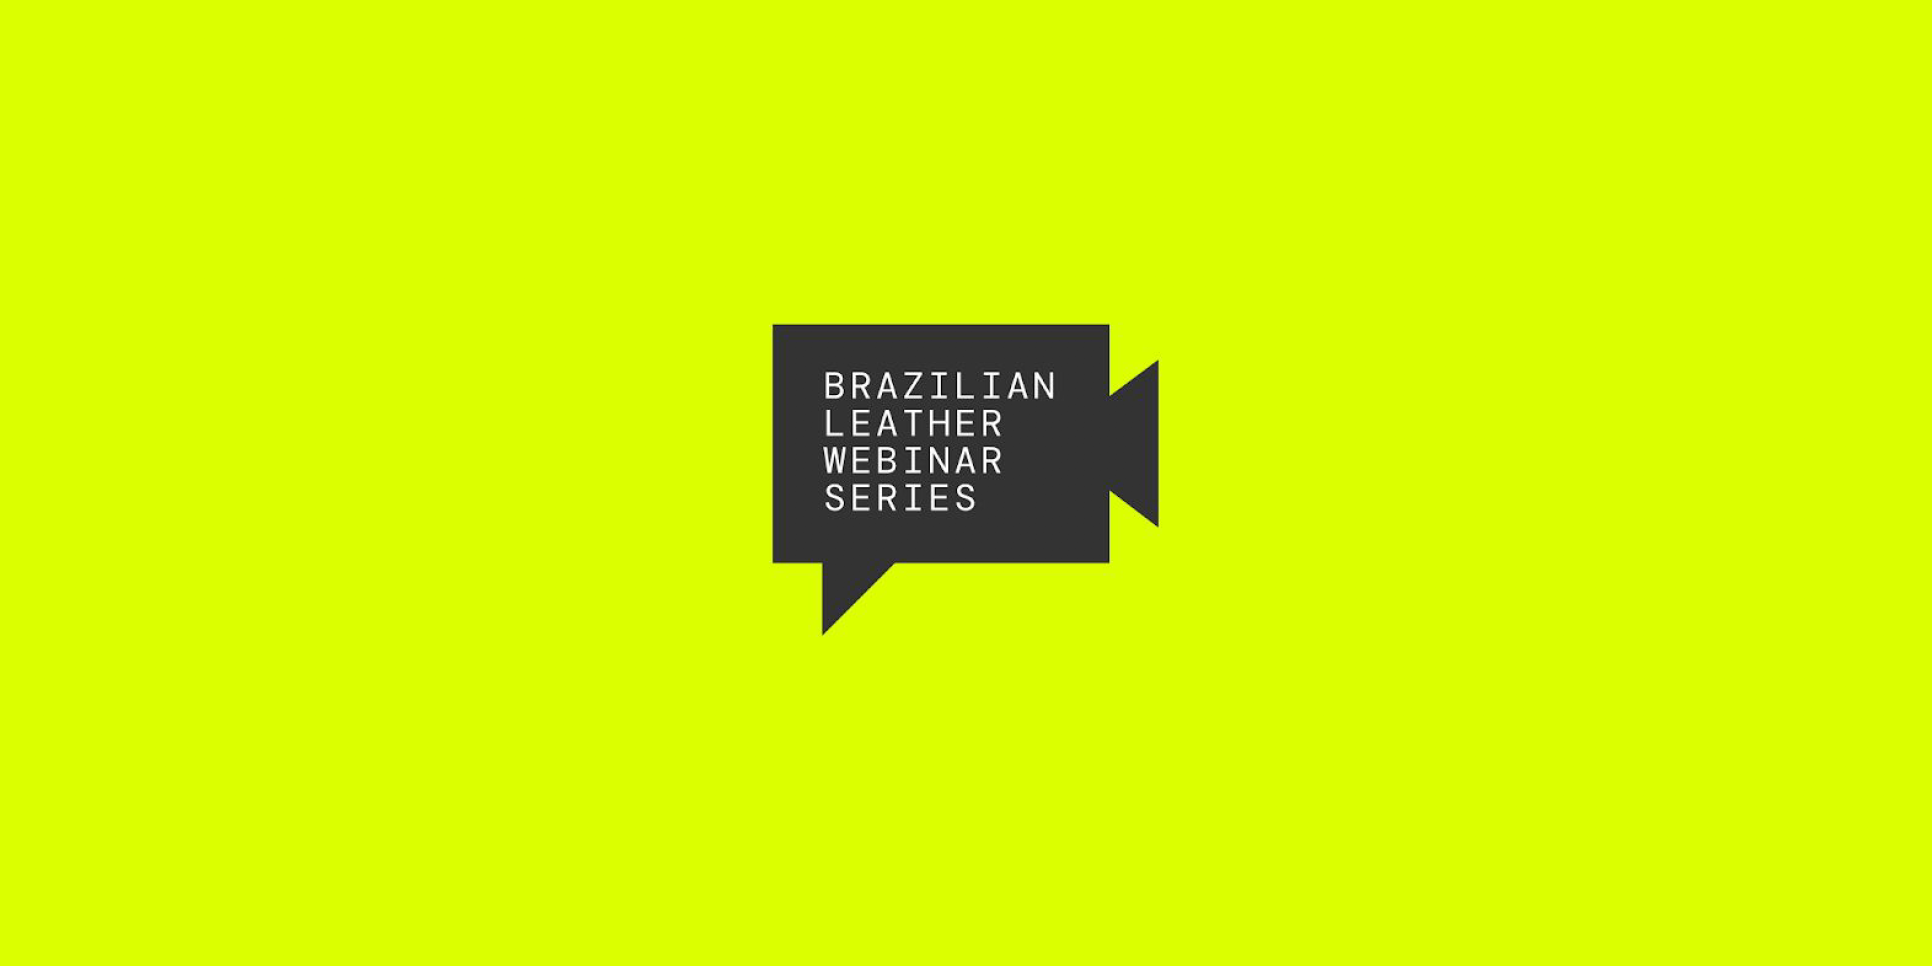 Próximo Brazilian Leather Webinar Series: Natuzzi, Furf e Grupo Minuano são os convidados